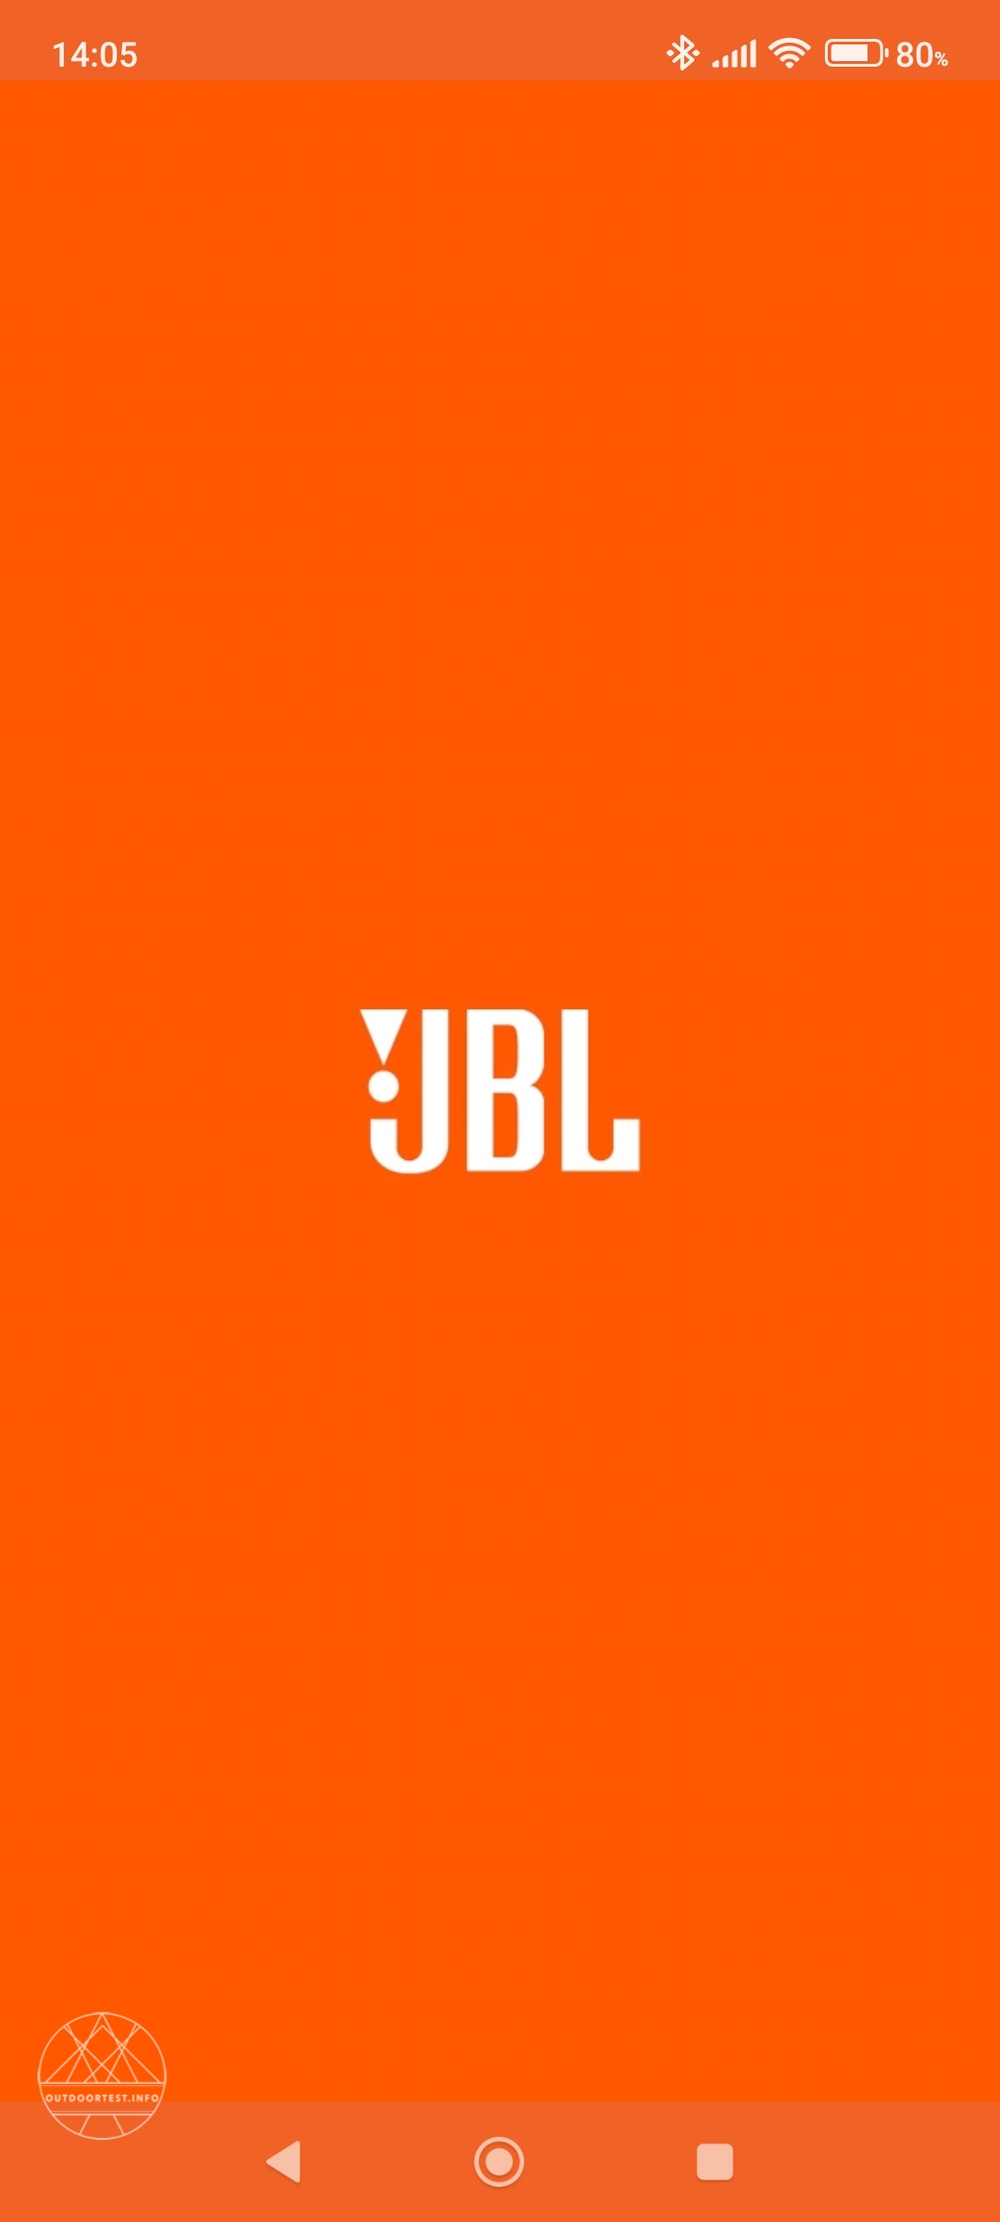 JBL Live 660NC